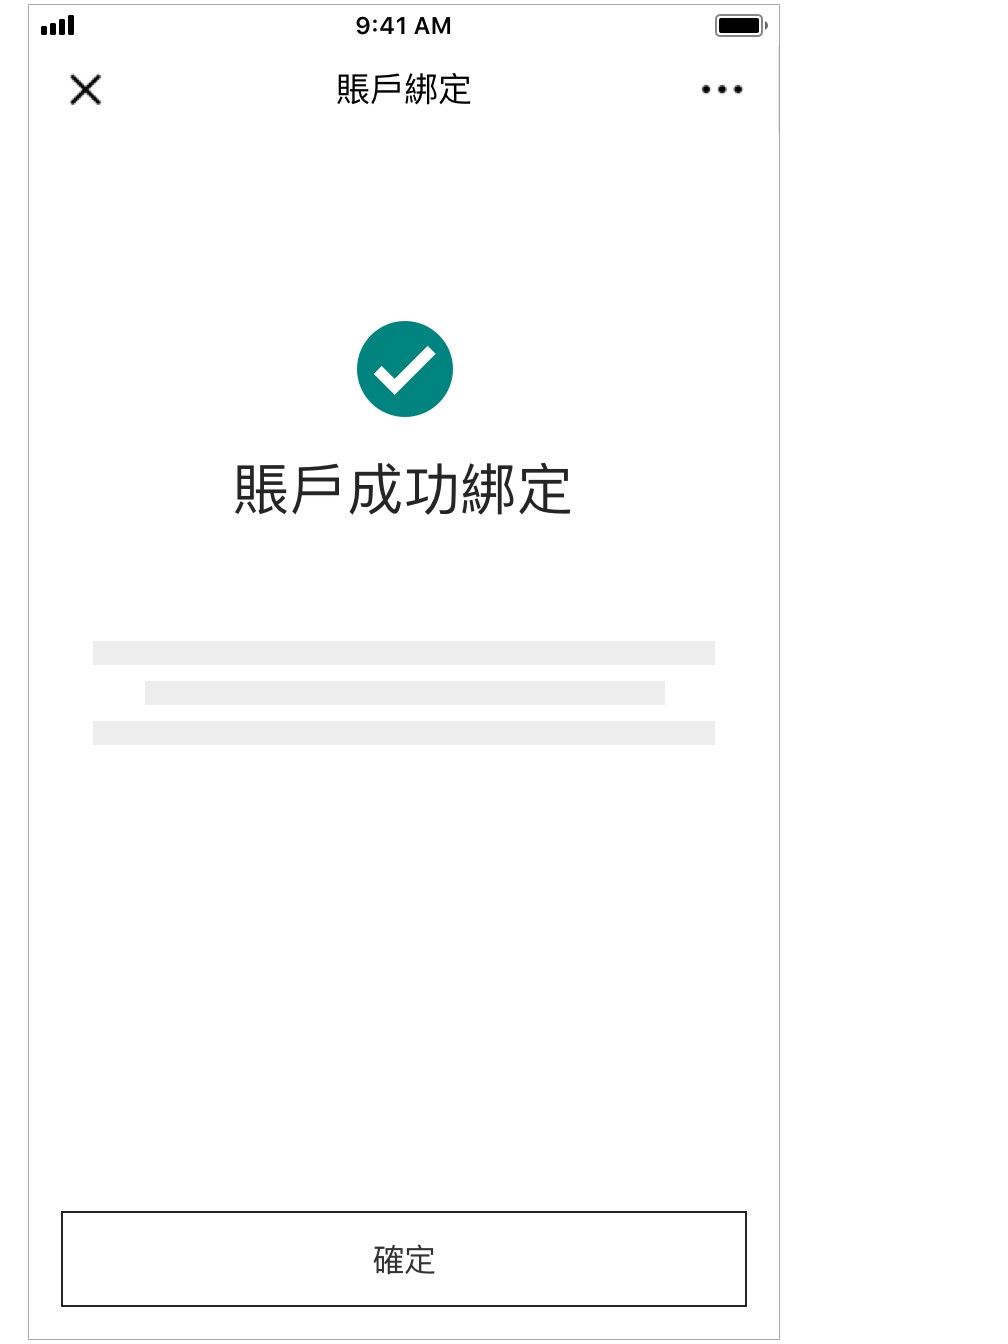 賬戶綁定步驟四的截圖；圖片使用於滙豐香港微信官方帳號頁面。